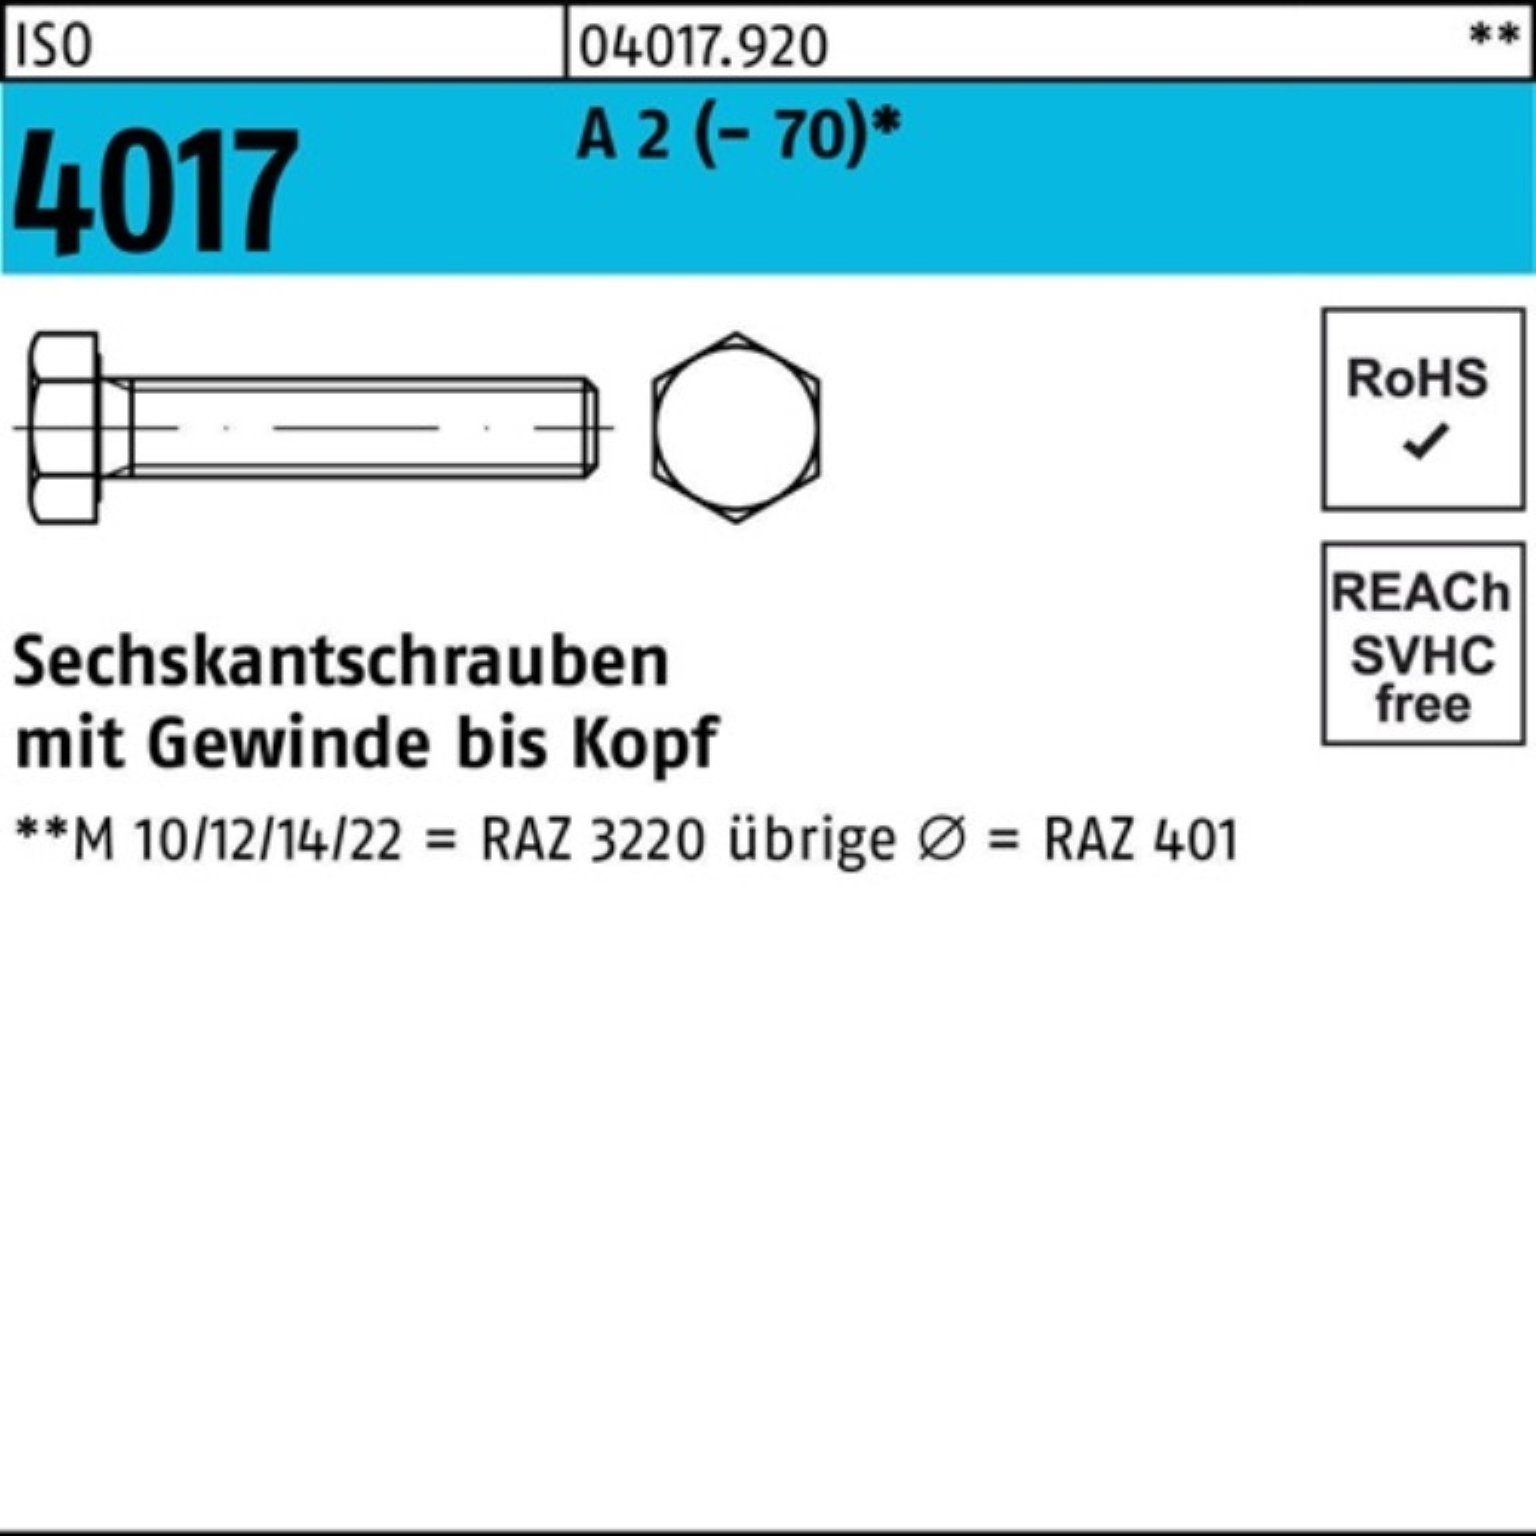 Bufab Sechskantschraube 100er Pack Sechskantschraube ISO 4017 VG M24x 55 A 2 (70) 10 Stück